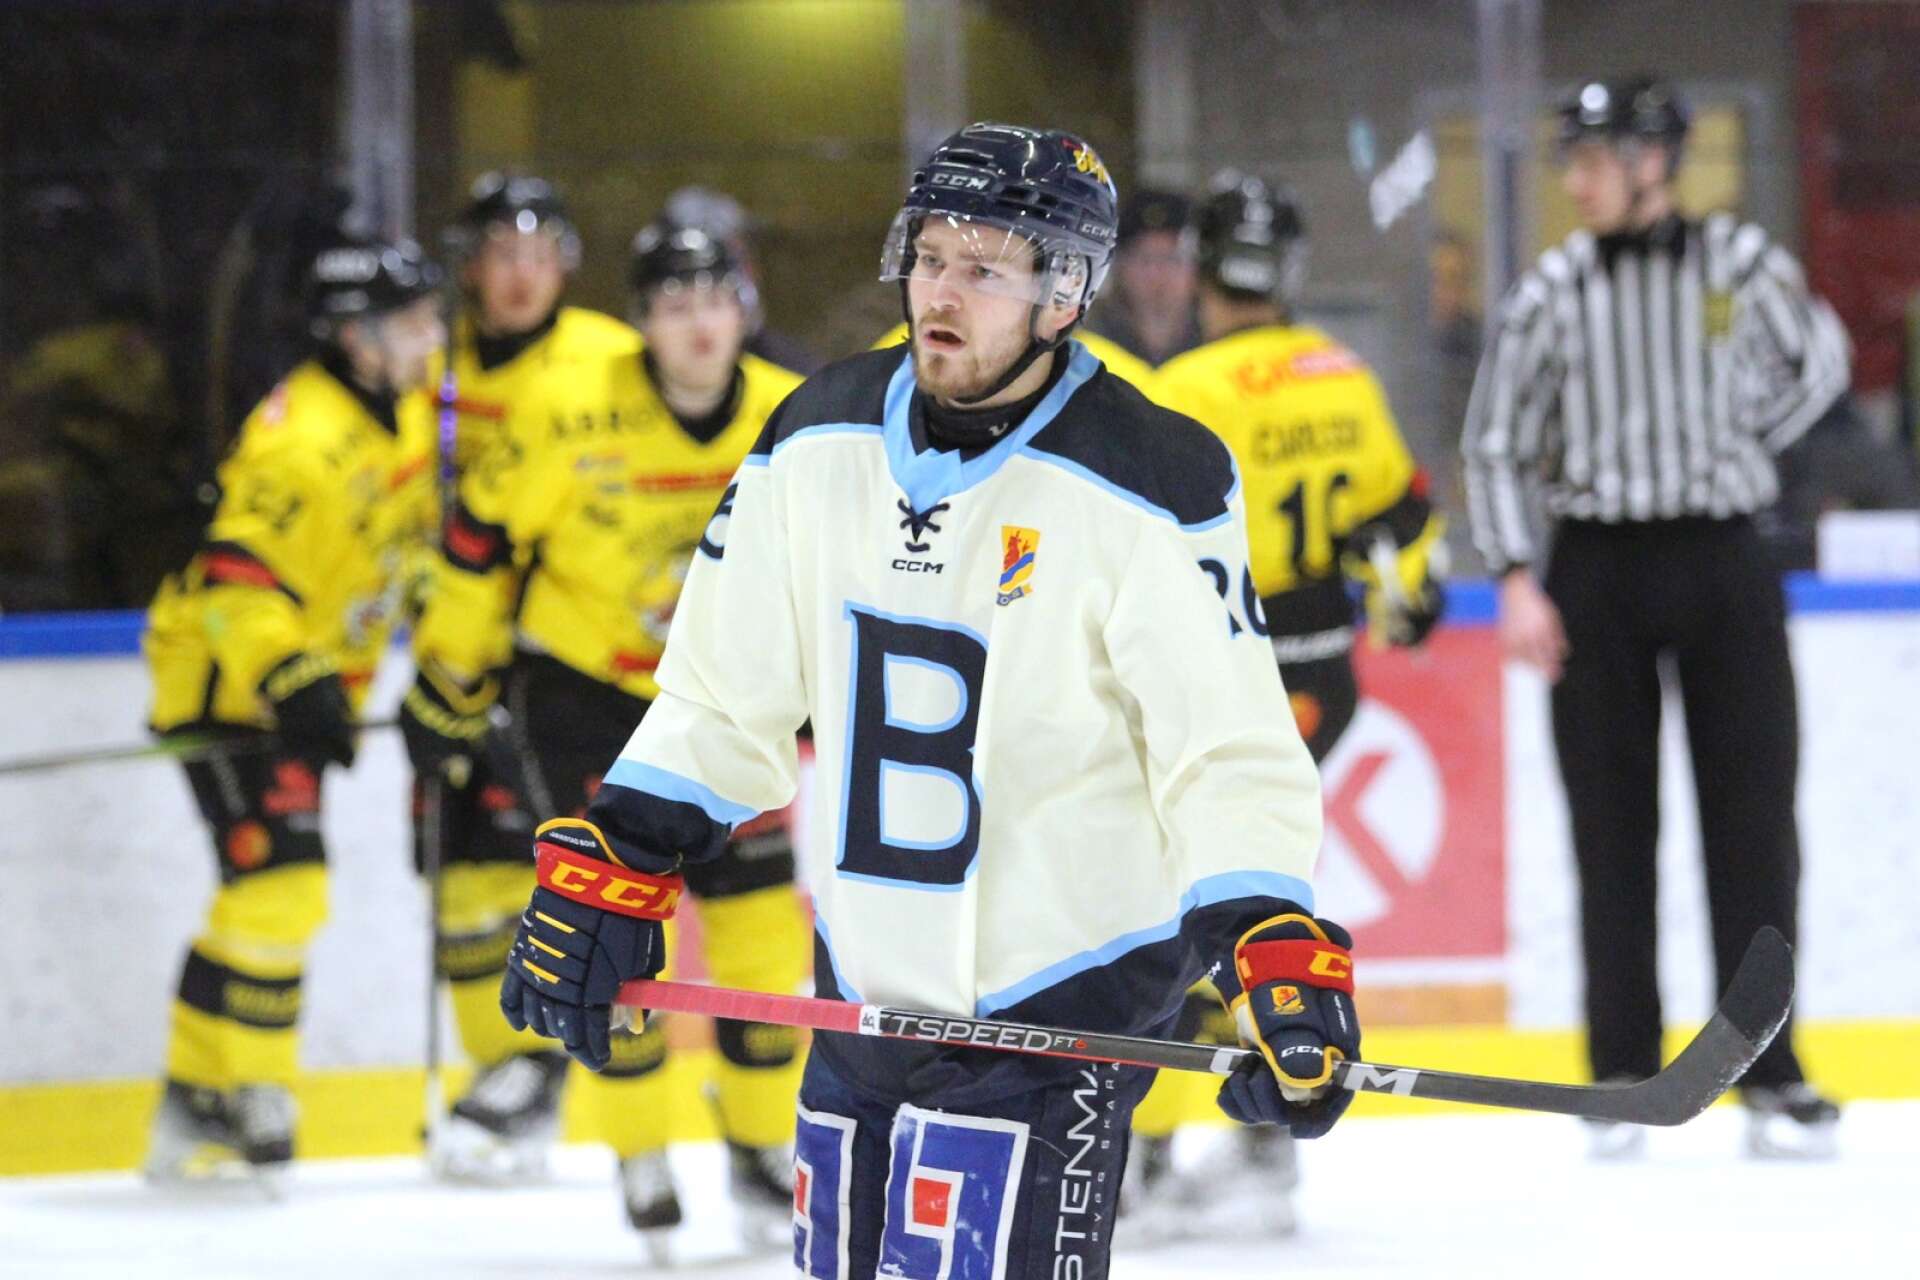 Simon Svensson och Mariestad Bois räckte inte till hemma mot Vimmerby HC, utan blev helt utan poäng.